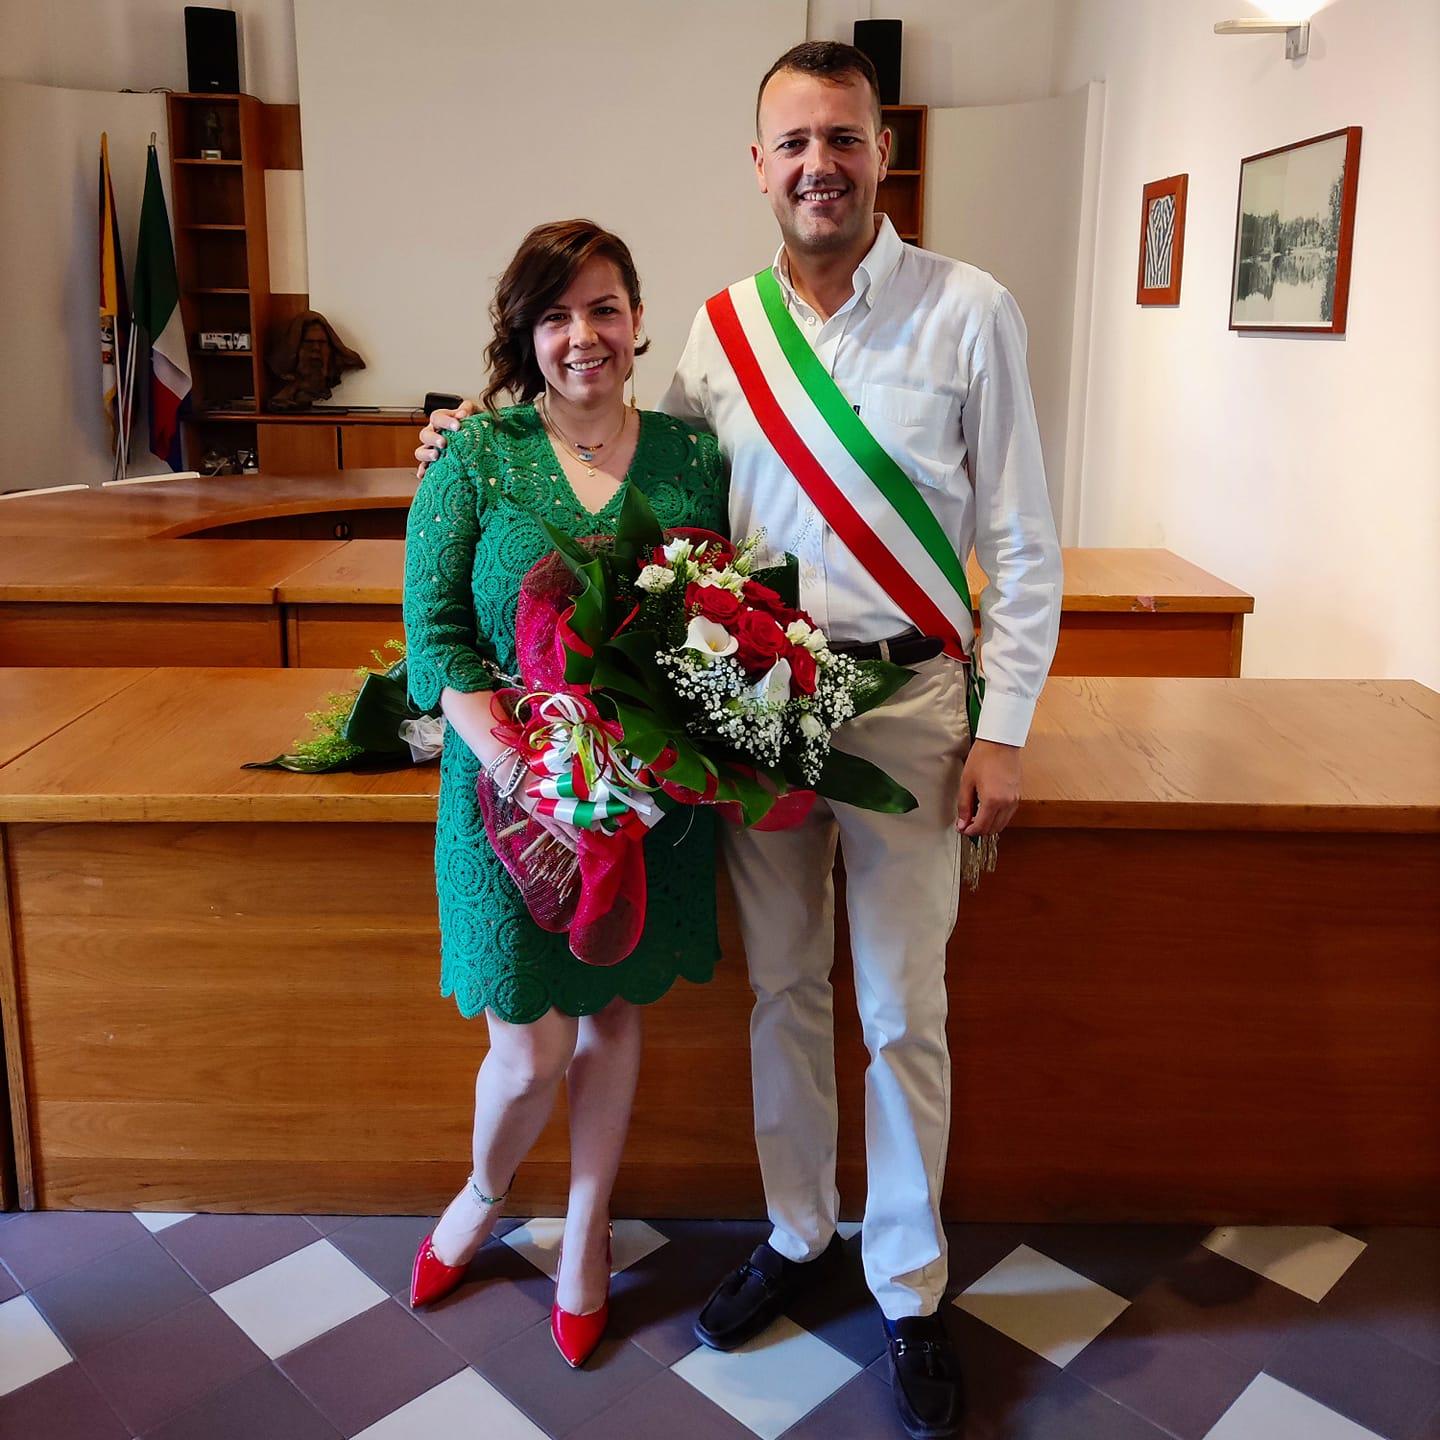 A Ceriano Mariane “nuova” cittadina italiana